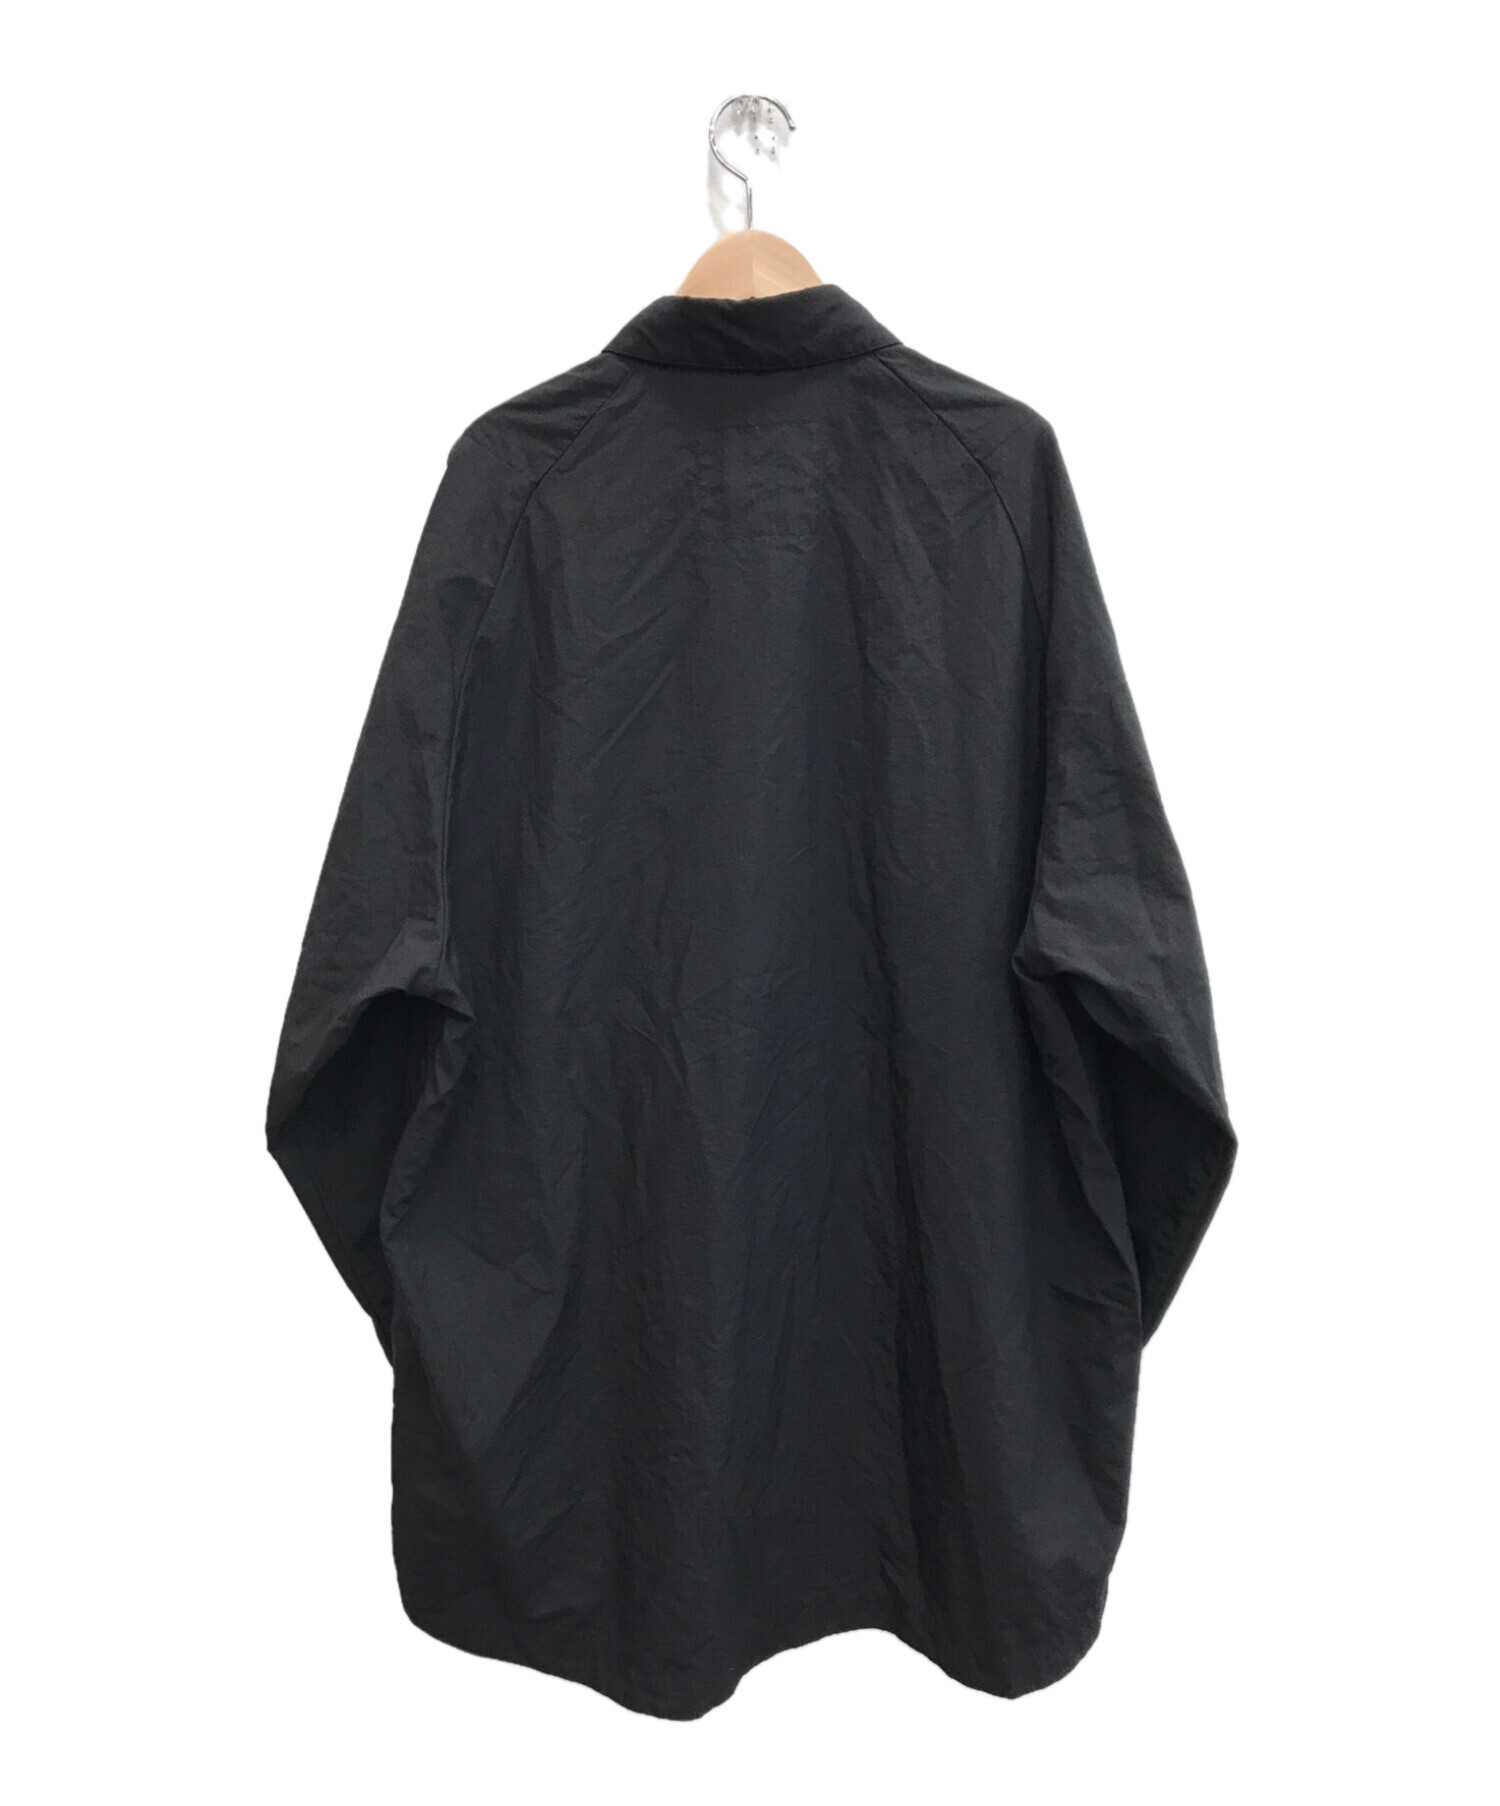 teatora (テアトラ) カートリッジシャツパッカブル ブラック サイズ:4